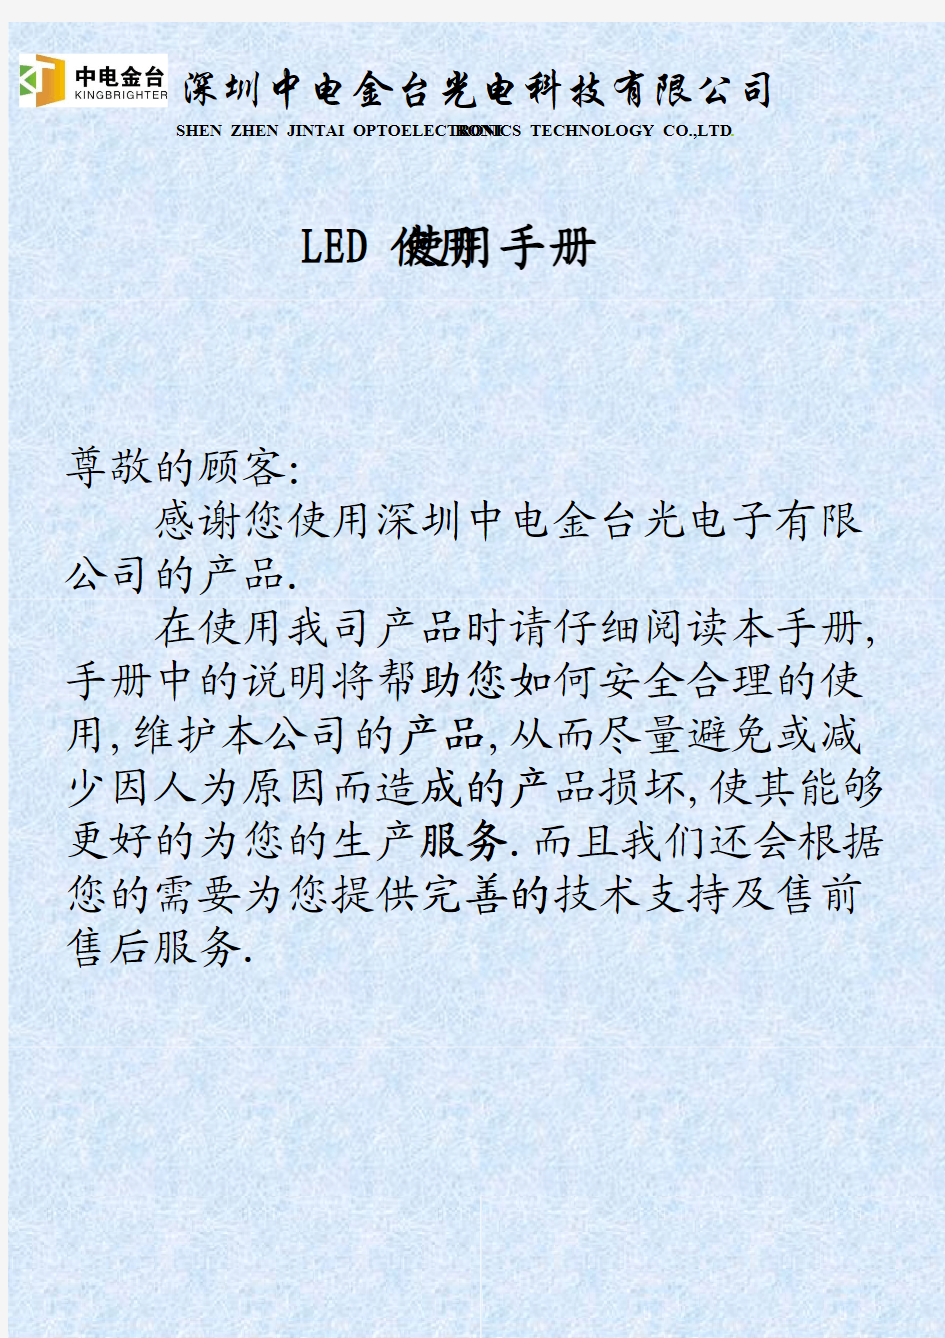 中电金台光电LED使用说明手册 [兼容模式]